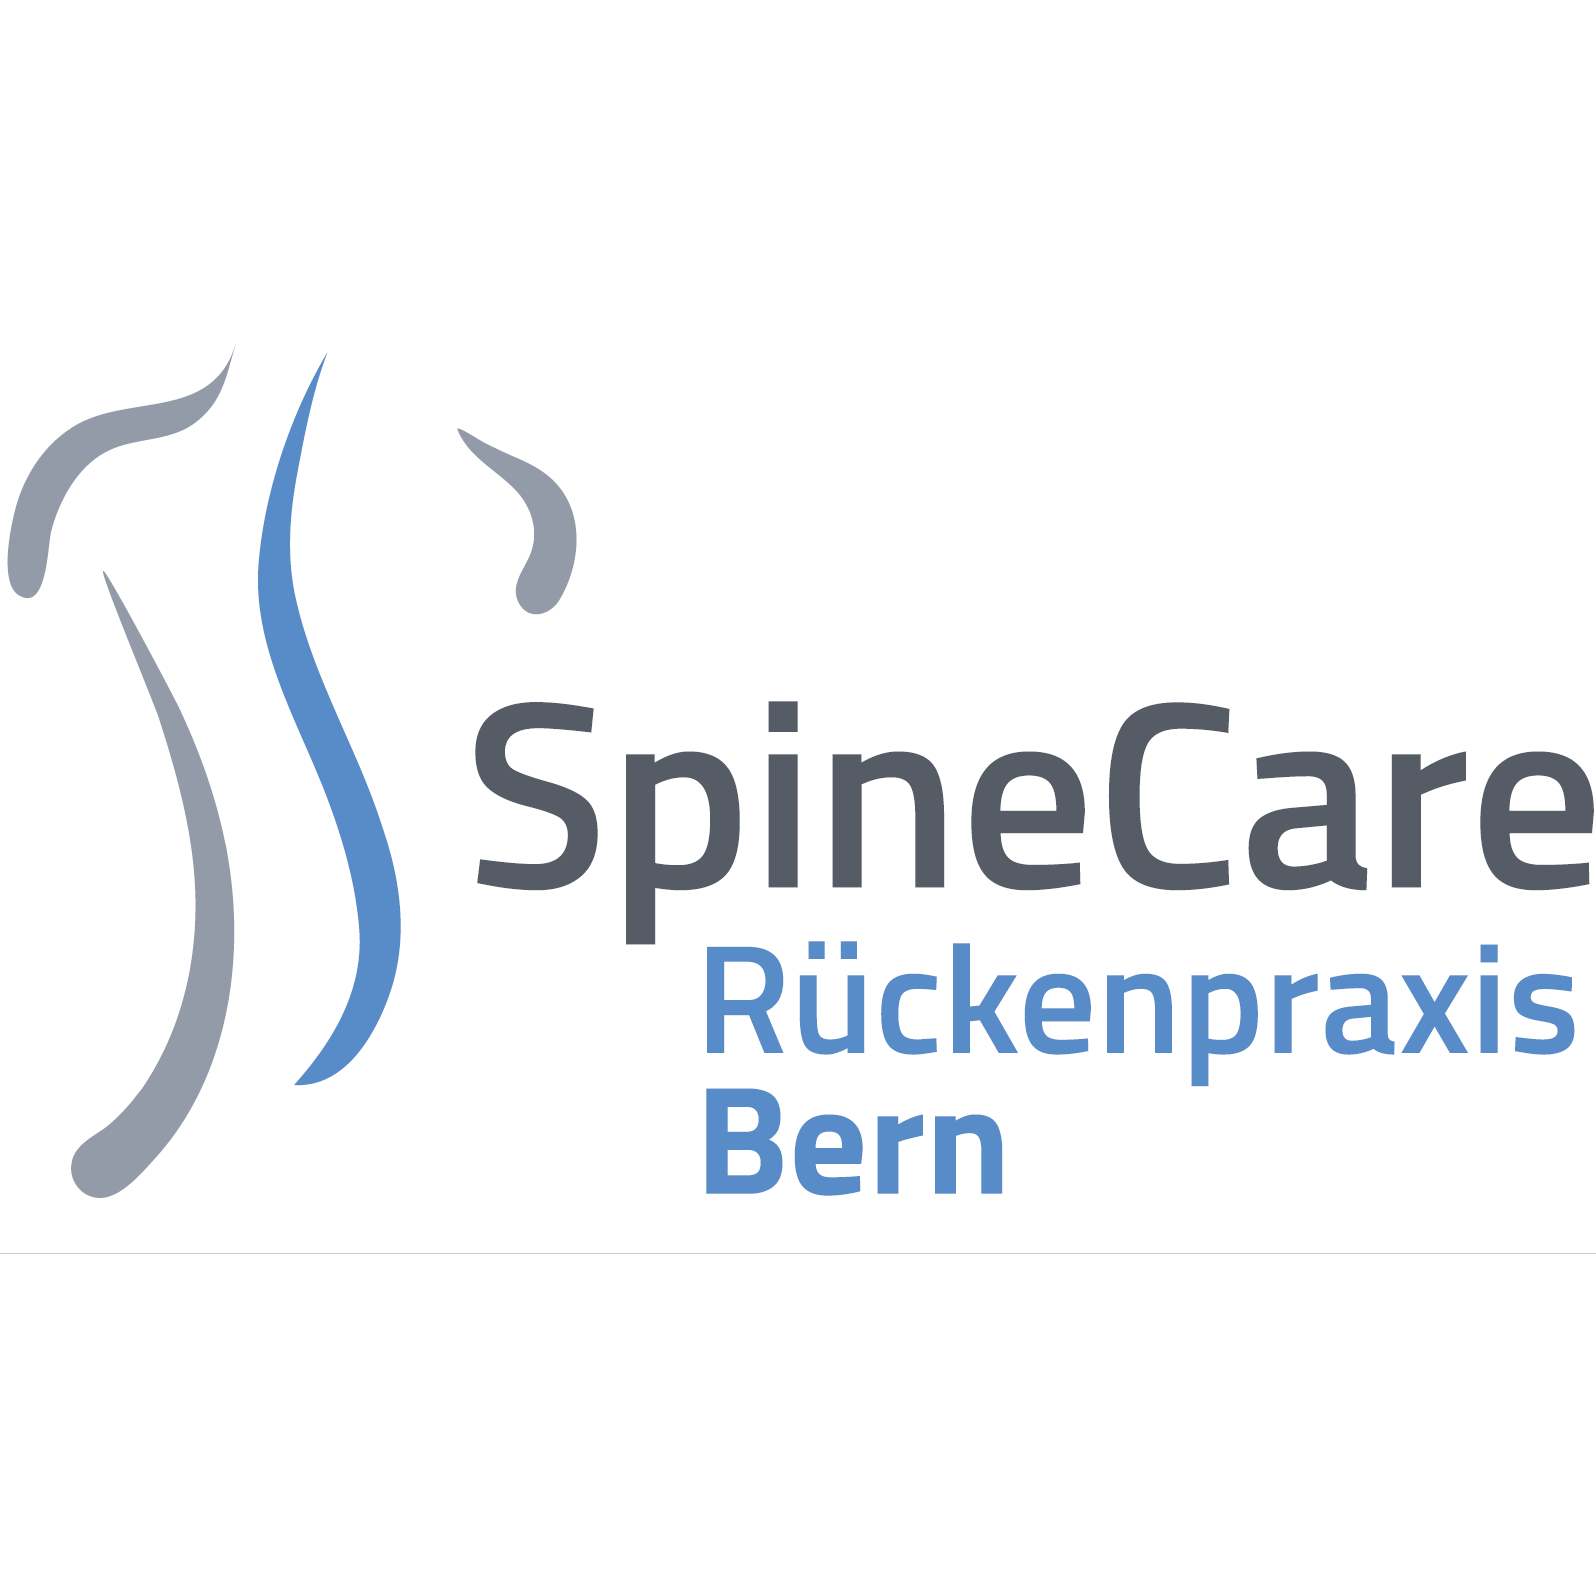 SpineCare Rückenpraxis - Neurologist - Bern - 031 301 60 60 Switzerland | ShowMeLocal.com